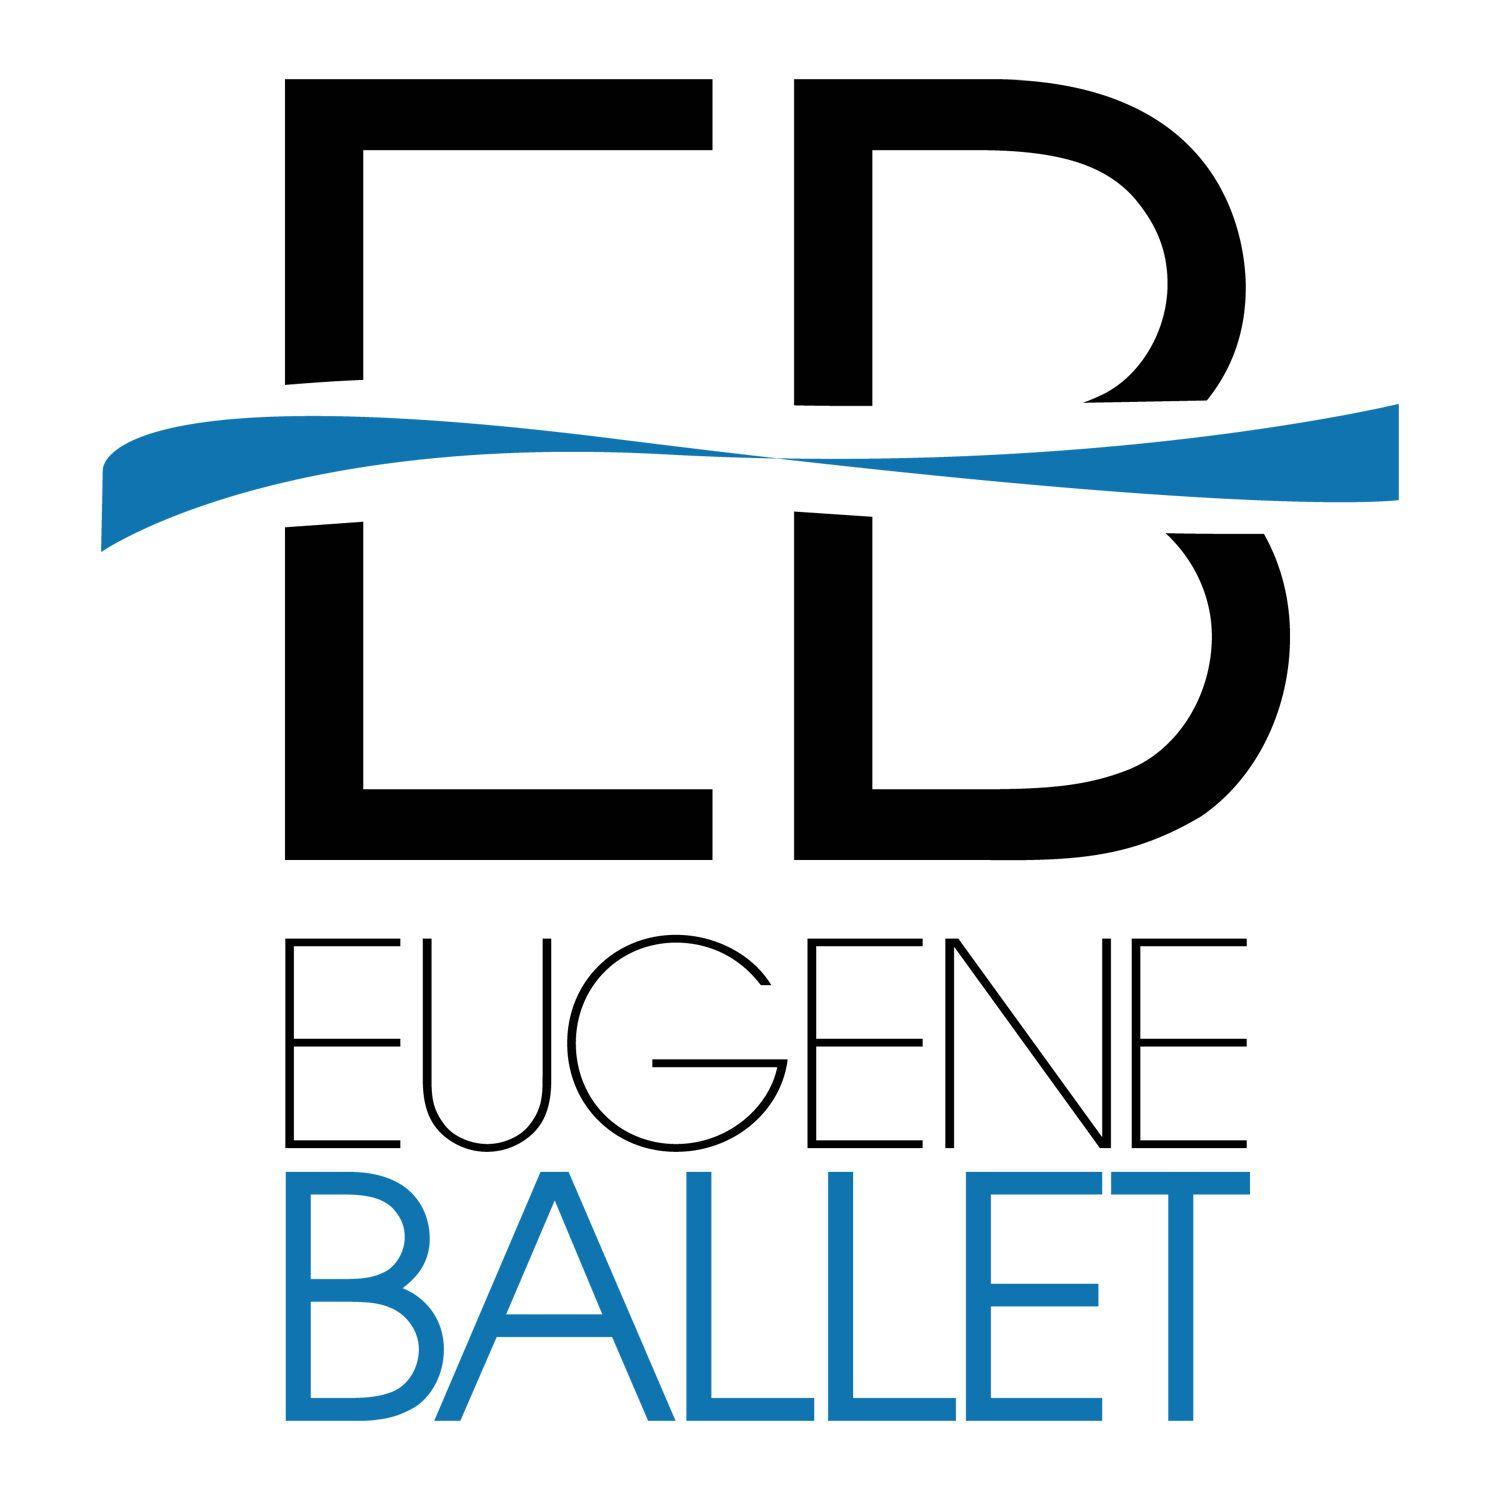 Eugene Logo - Eugene Ballet | Create, perform, educate & inspire through dance